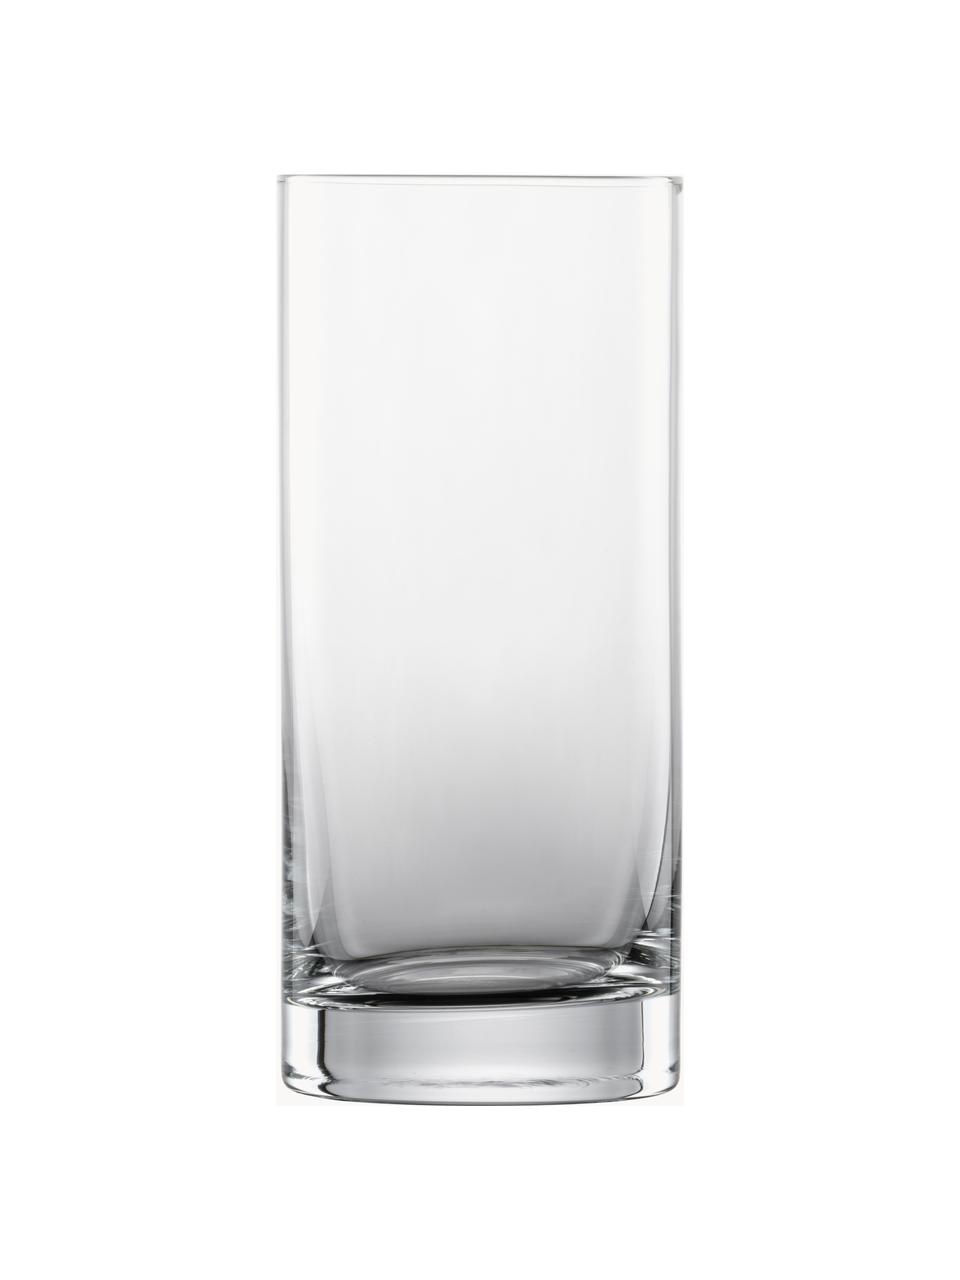 Kristall-Longdrinkgläser Tavoro, 4 Stück, Tritan-Kristallglas, Transparent, Ø 7 x H 16 cm, 460 ml